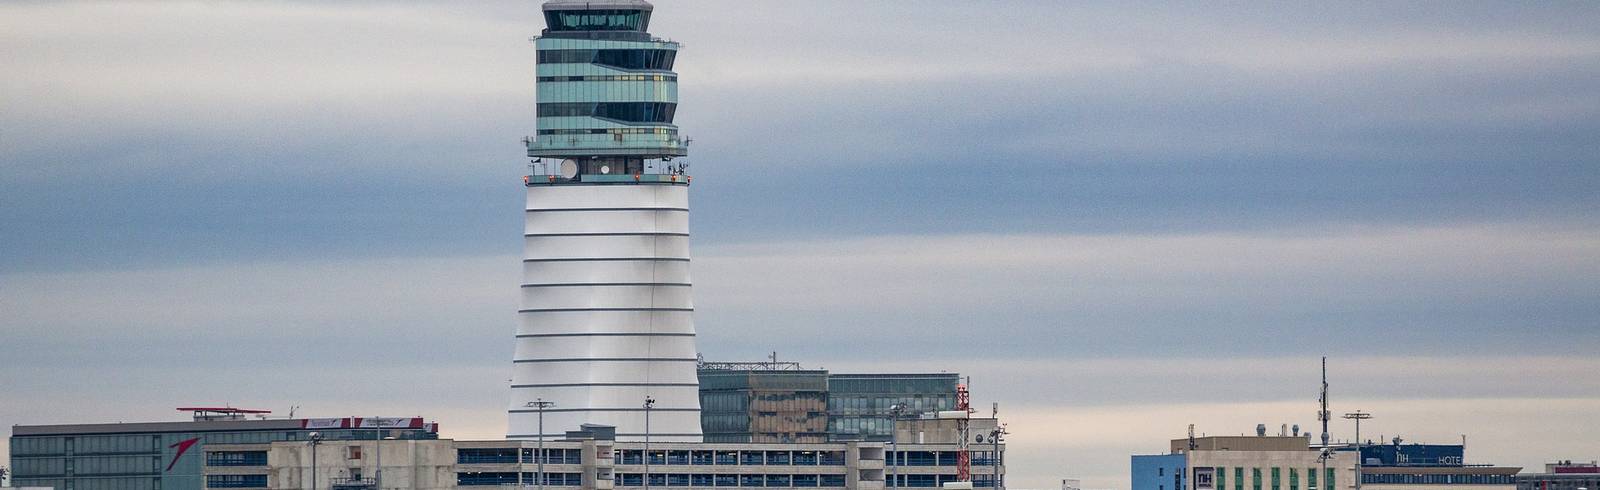 Flughafen Wien: Passagierzuwachs im November